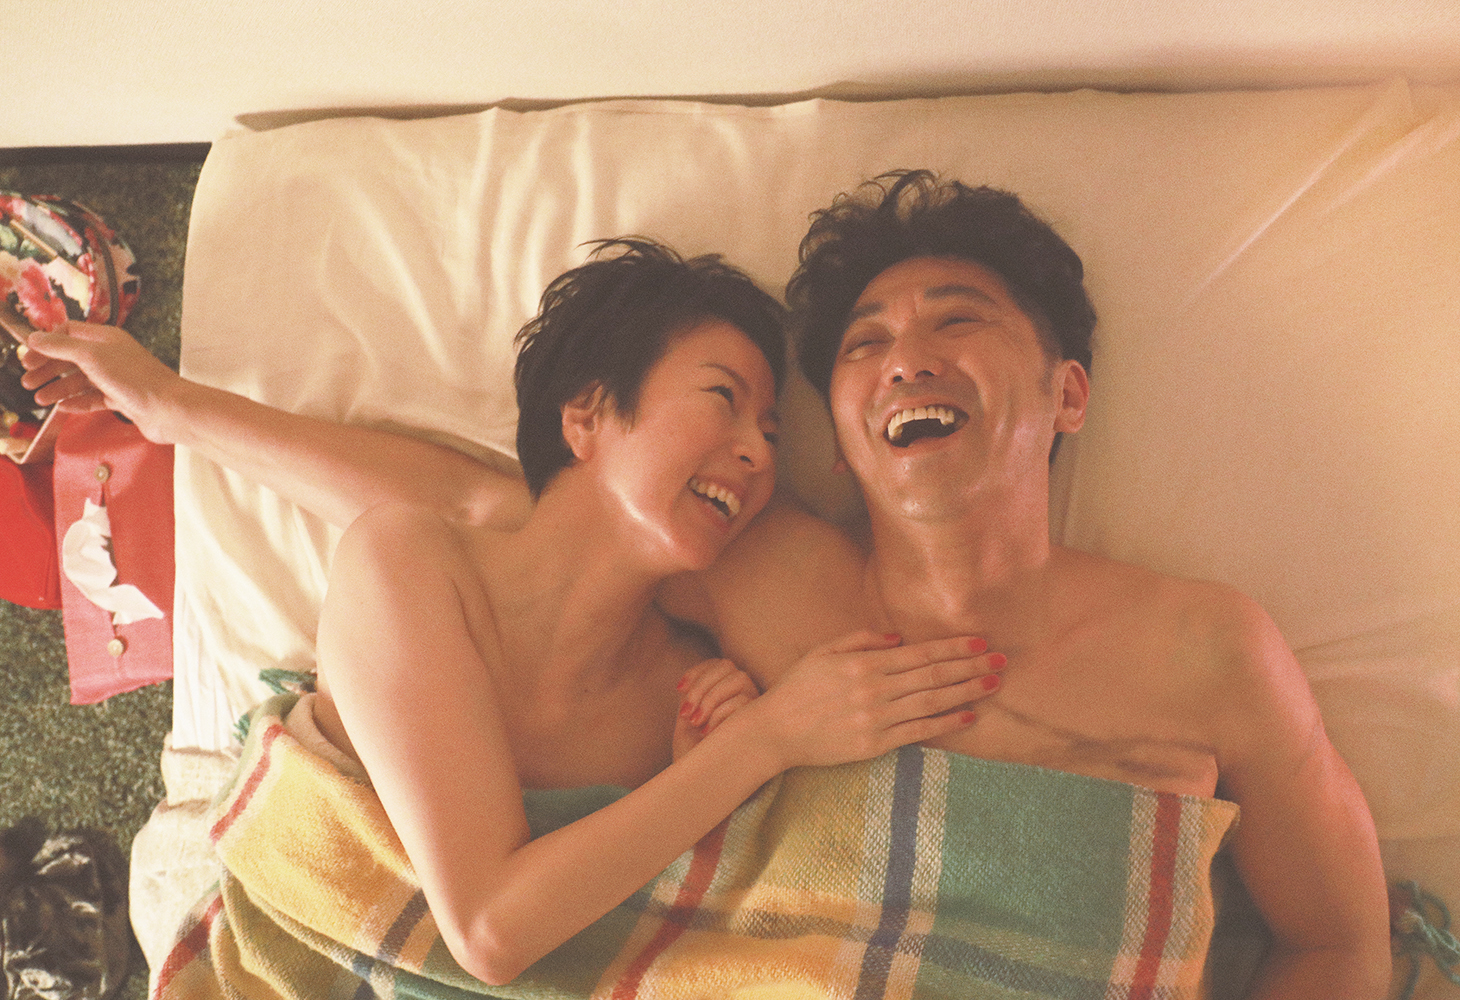 Miho und Yoshida liegen vergnügt nebeneinander im Bett und lachen - You've Got a Friend